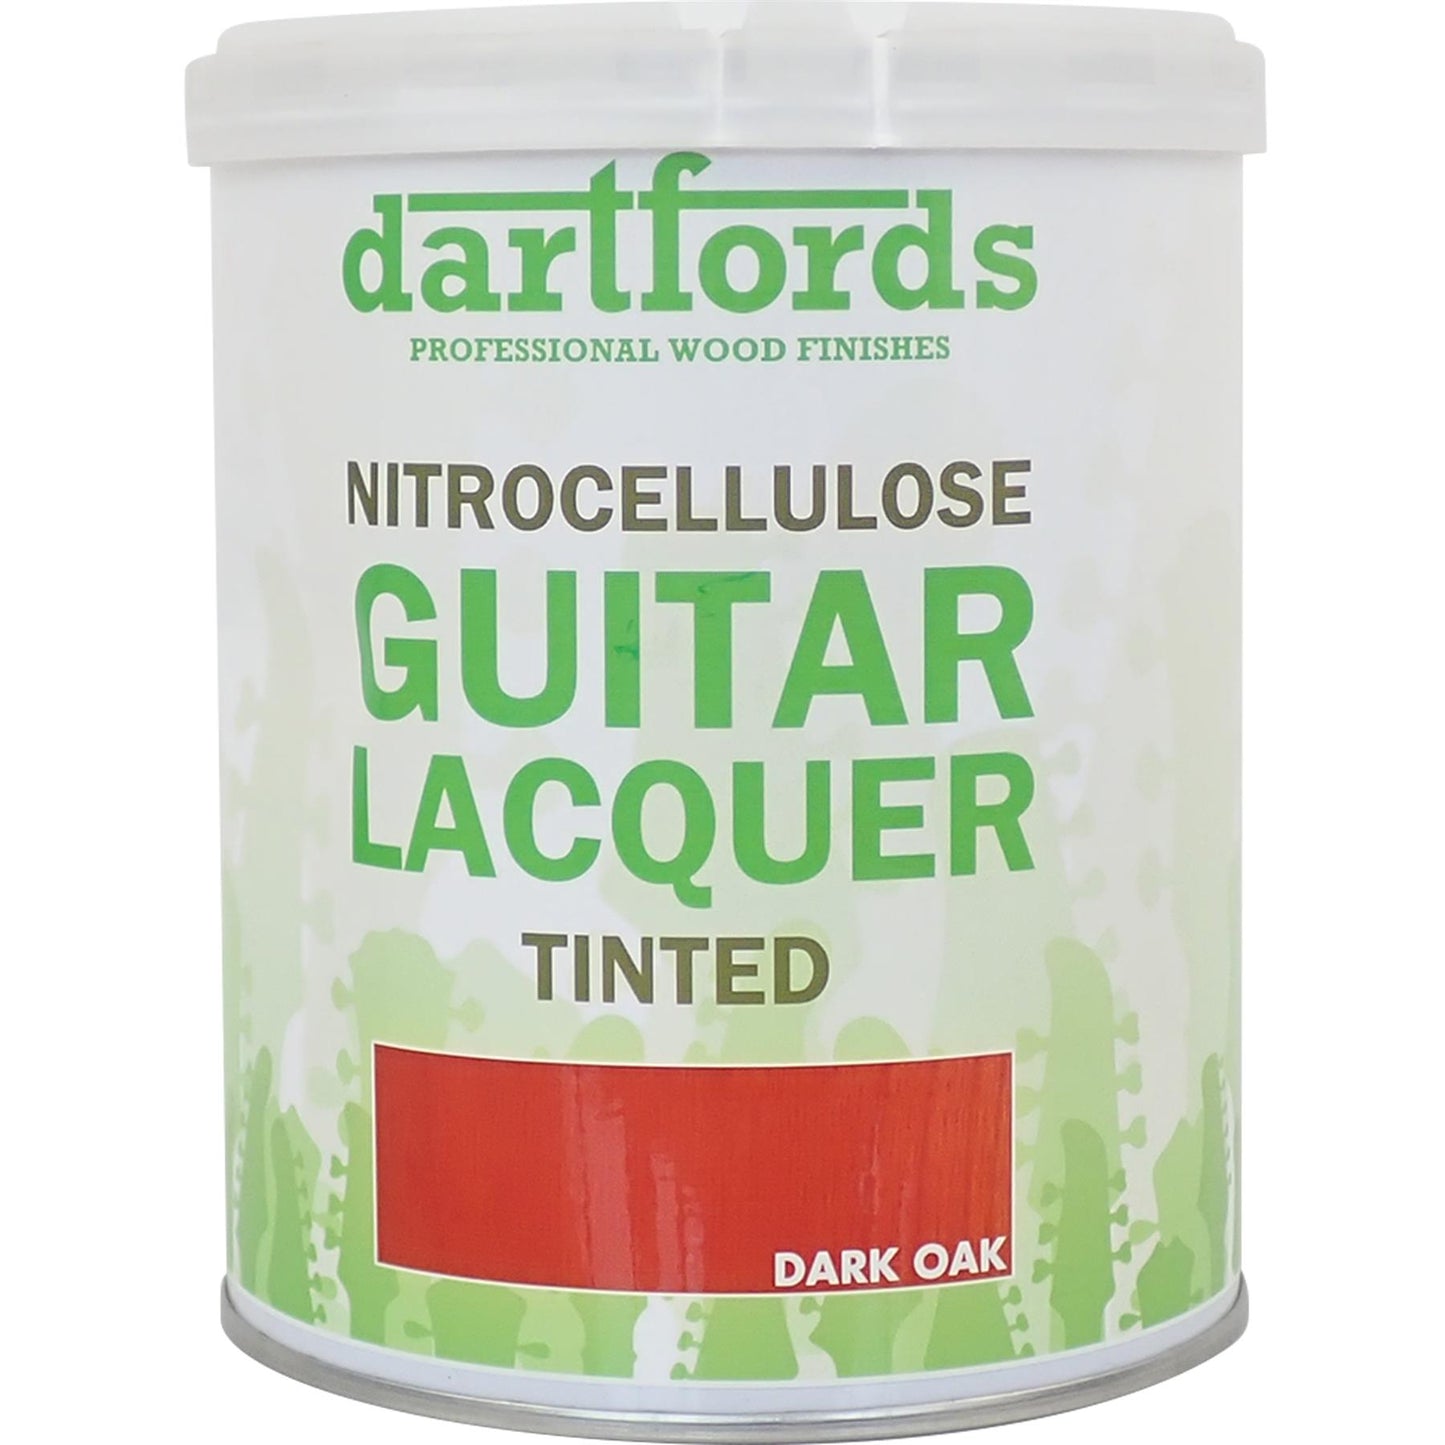 dartfords Dark Oak Nitrocellulose Guitar Lacquer - 230ml Tin